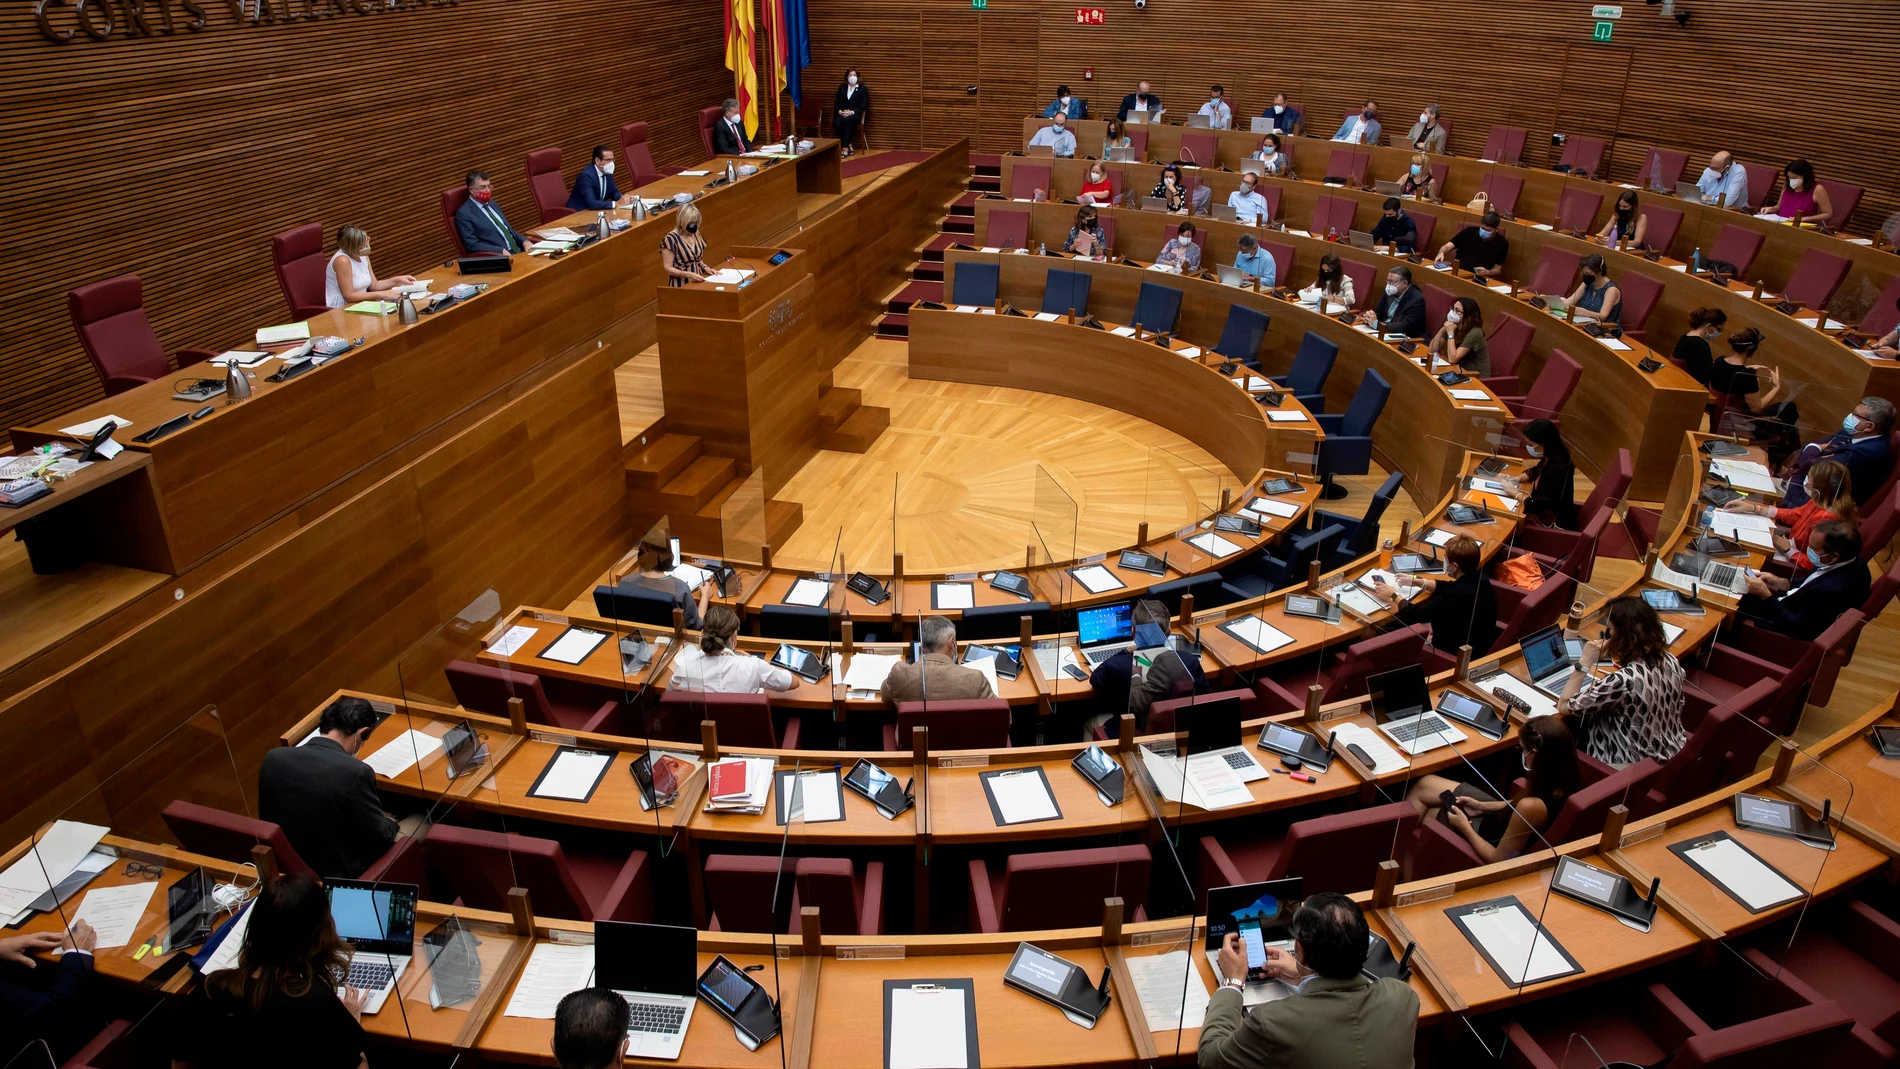 El Consell Valencià de la Joventut (CVJ) se reunirá con los grupos parlamentarios e intentará llevar a Les Corts el debate de la salud mental entre la población joven. Foto de archivo